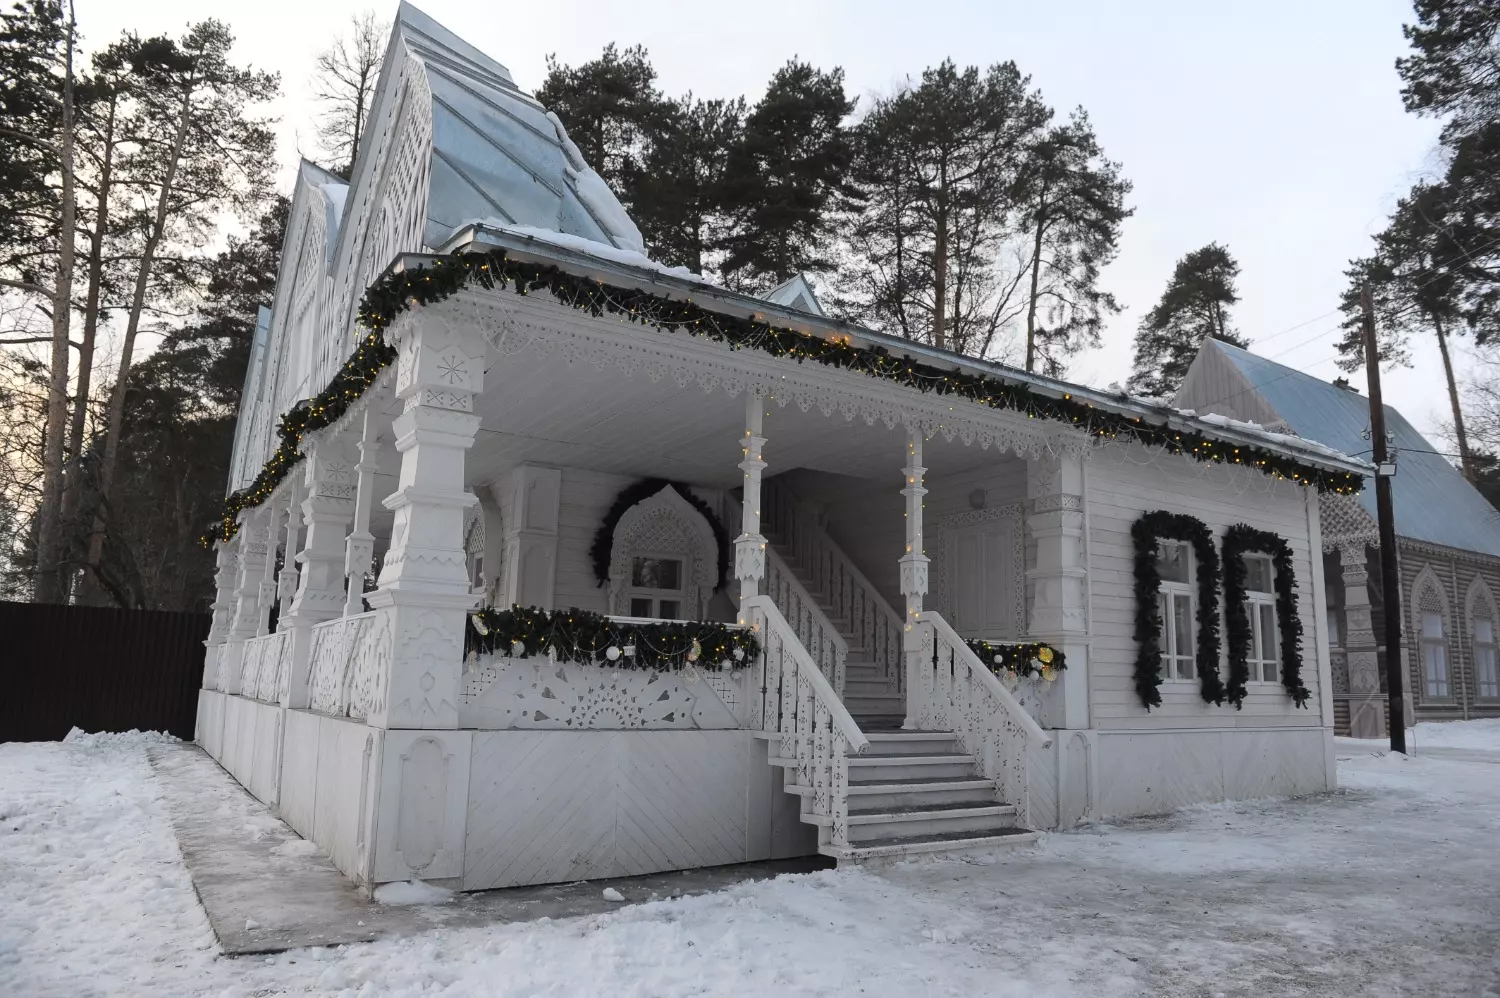 Так выглядит дача Деда Мороза, которая некогда принадлежала статскому советнику Александру Синакевичу